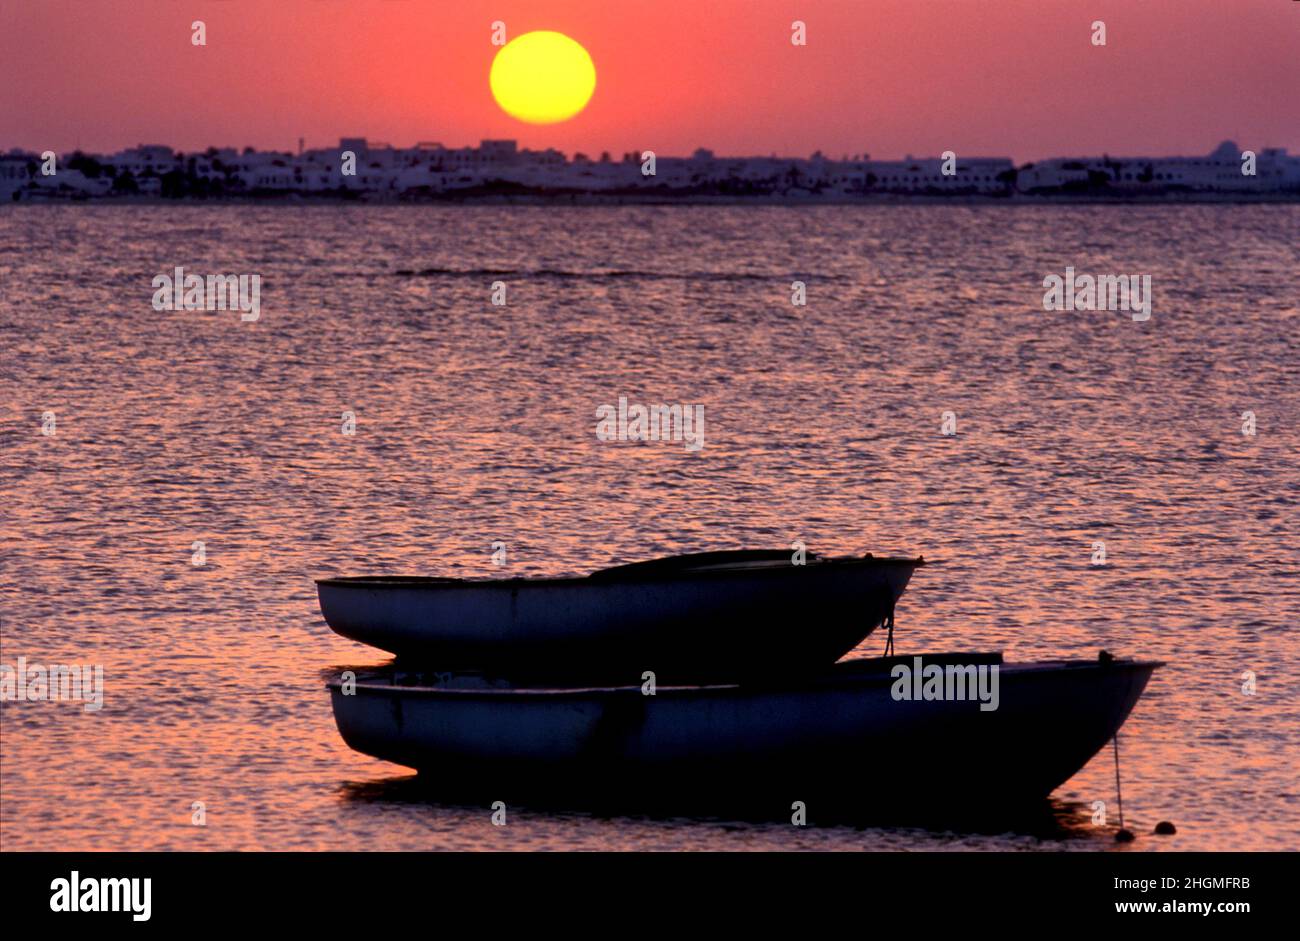 Dinghy boats and coastal sunset, Djerba, Tunisia Stock Photo